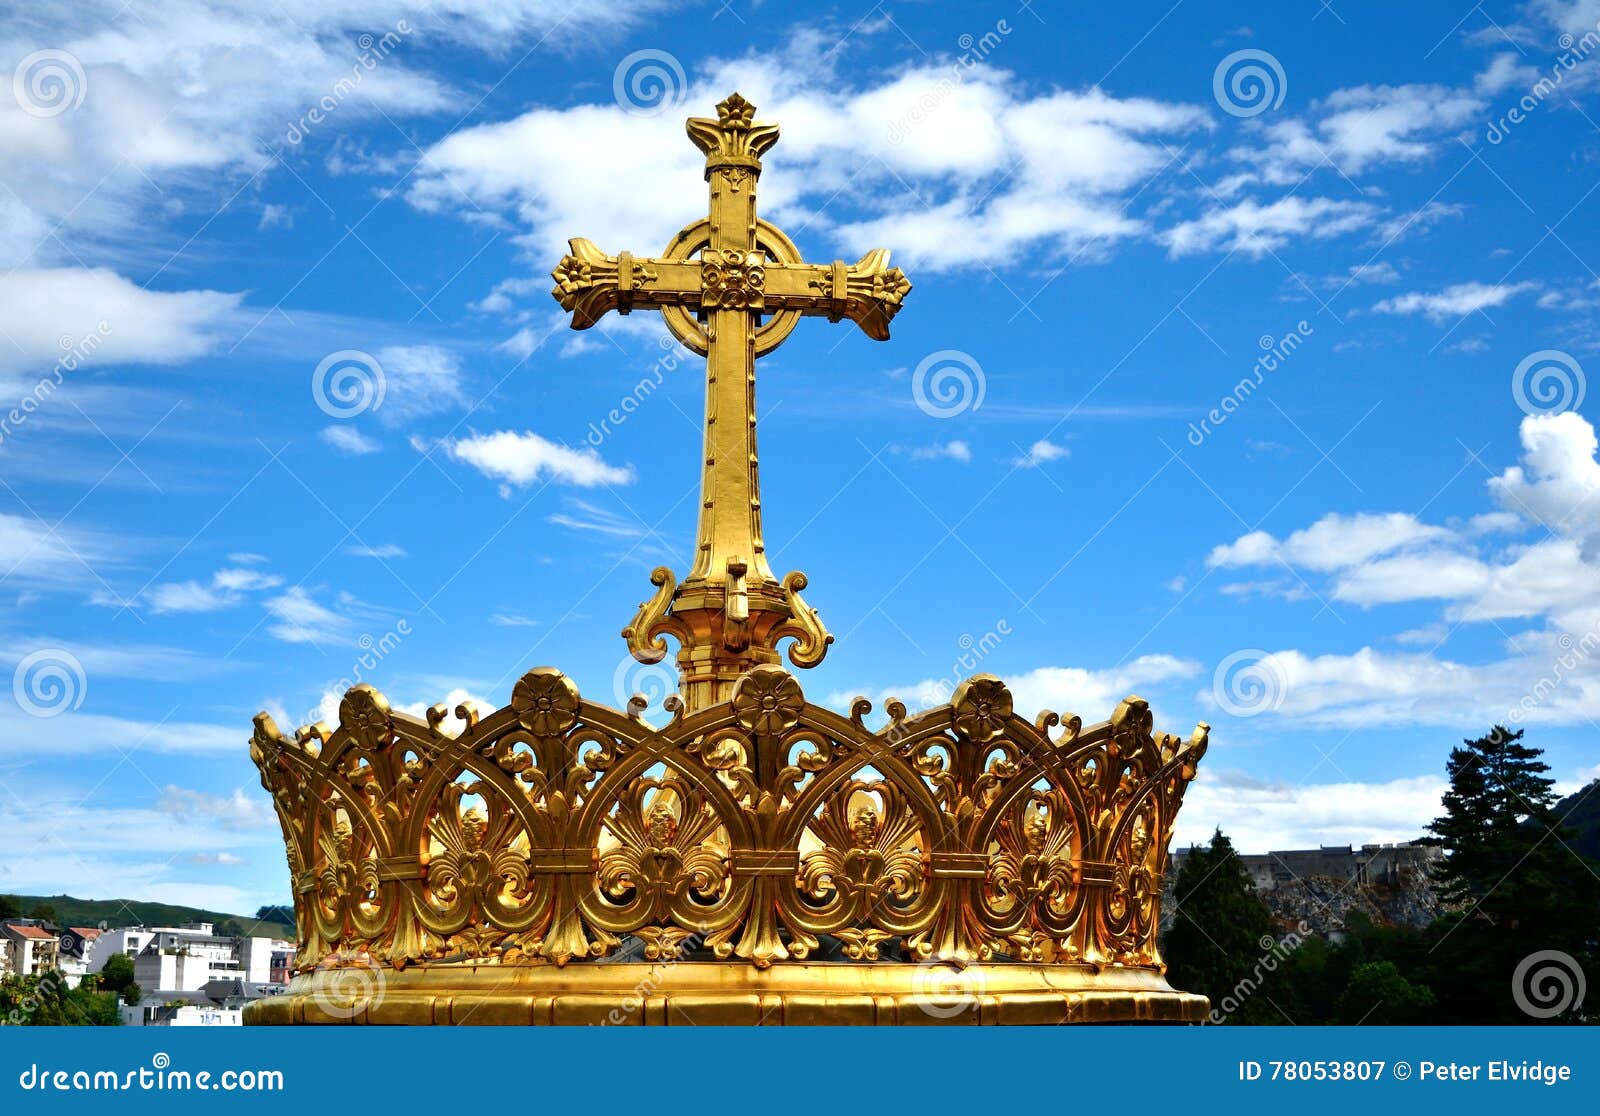 Catholic Church Holy Cross Against Blue Sky Stock Image - Image of ...